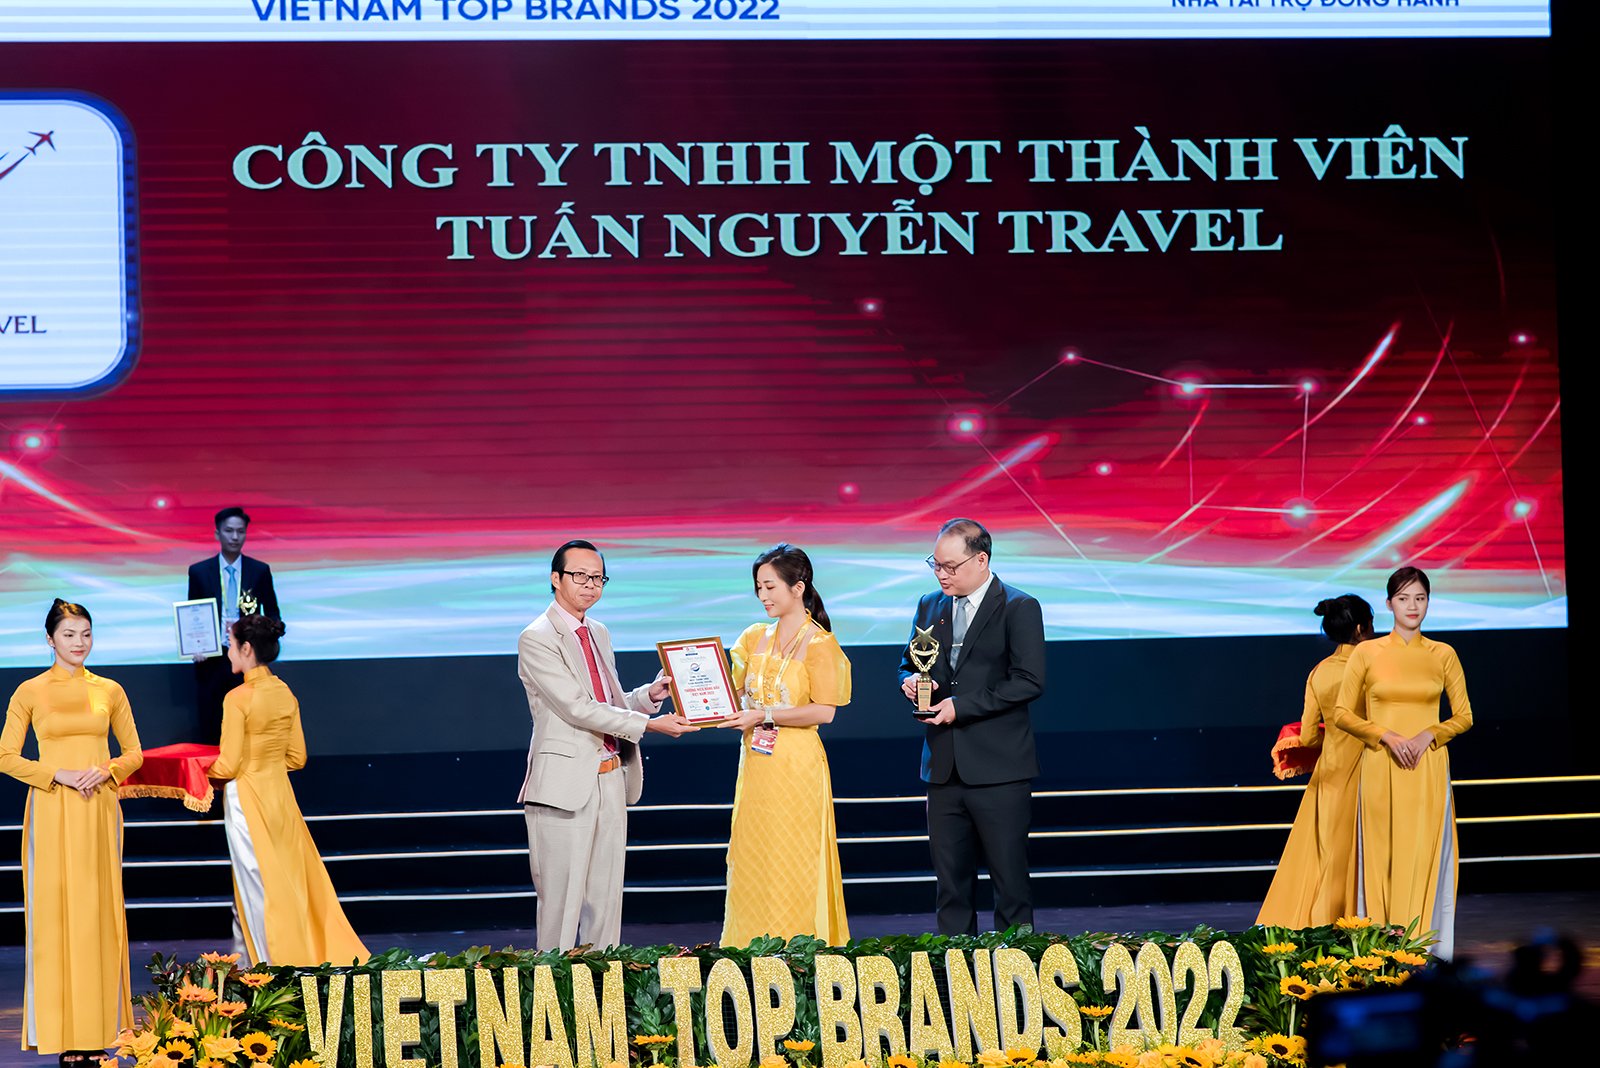 Tuấn Nguyễn Travel vinh dự đạt giải thưởng Top 10 thương hiệu du lịch hàng đầu Việt Nam 2022